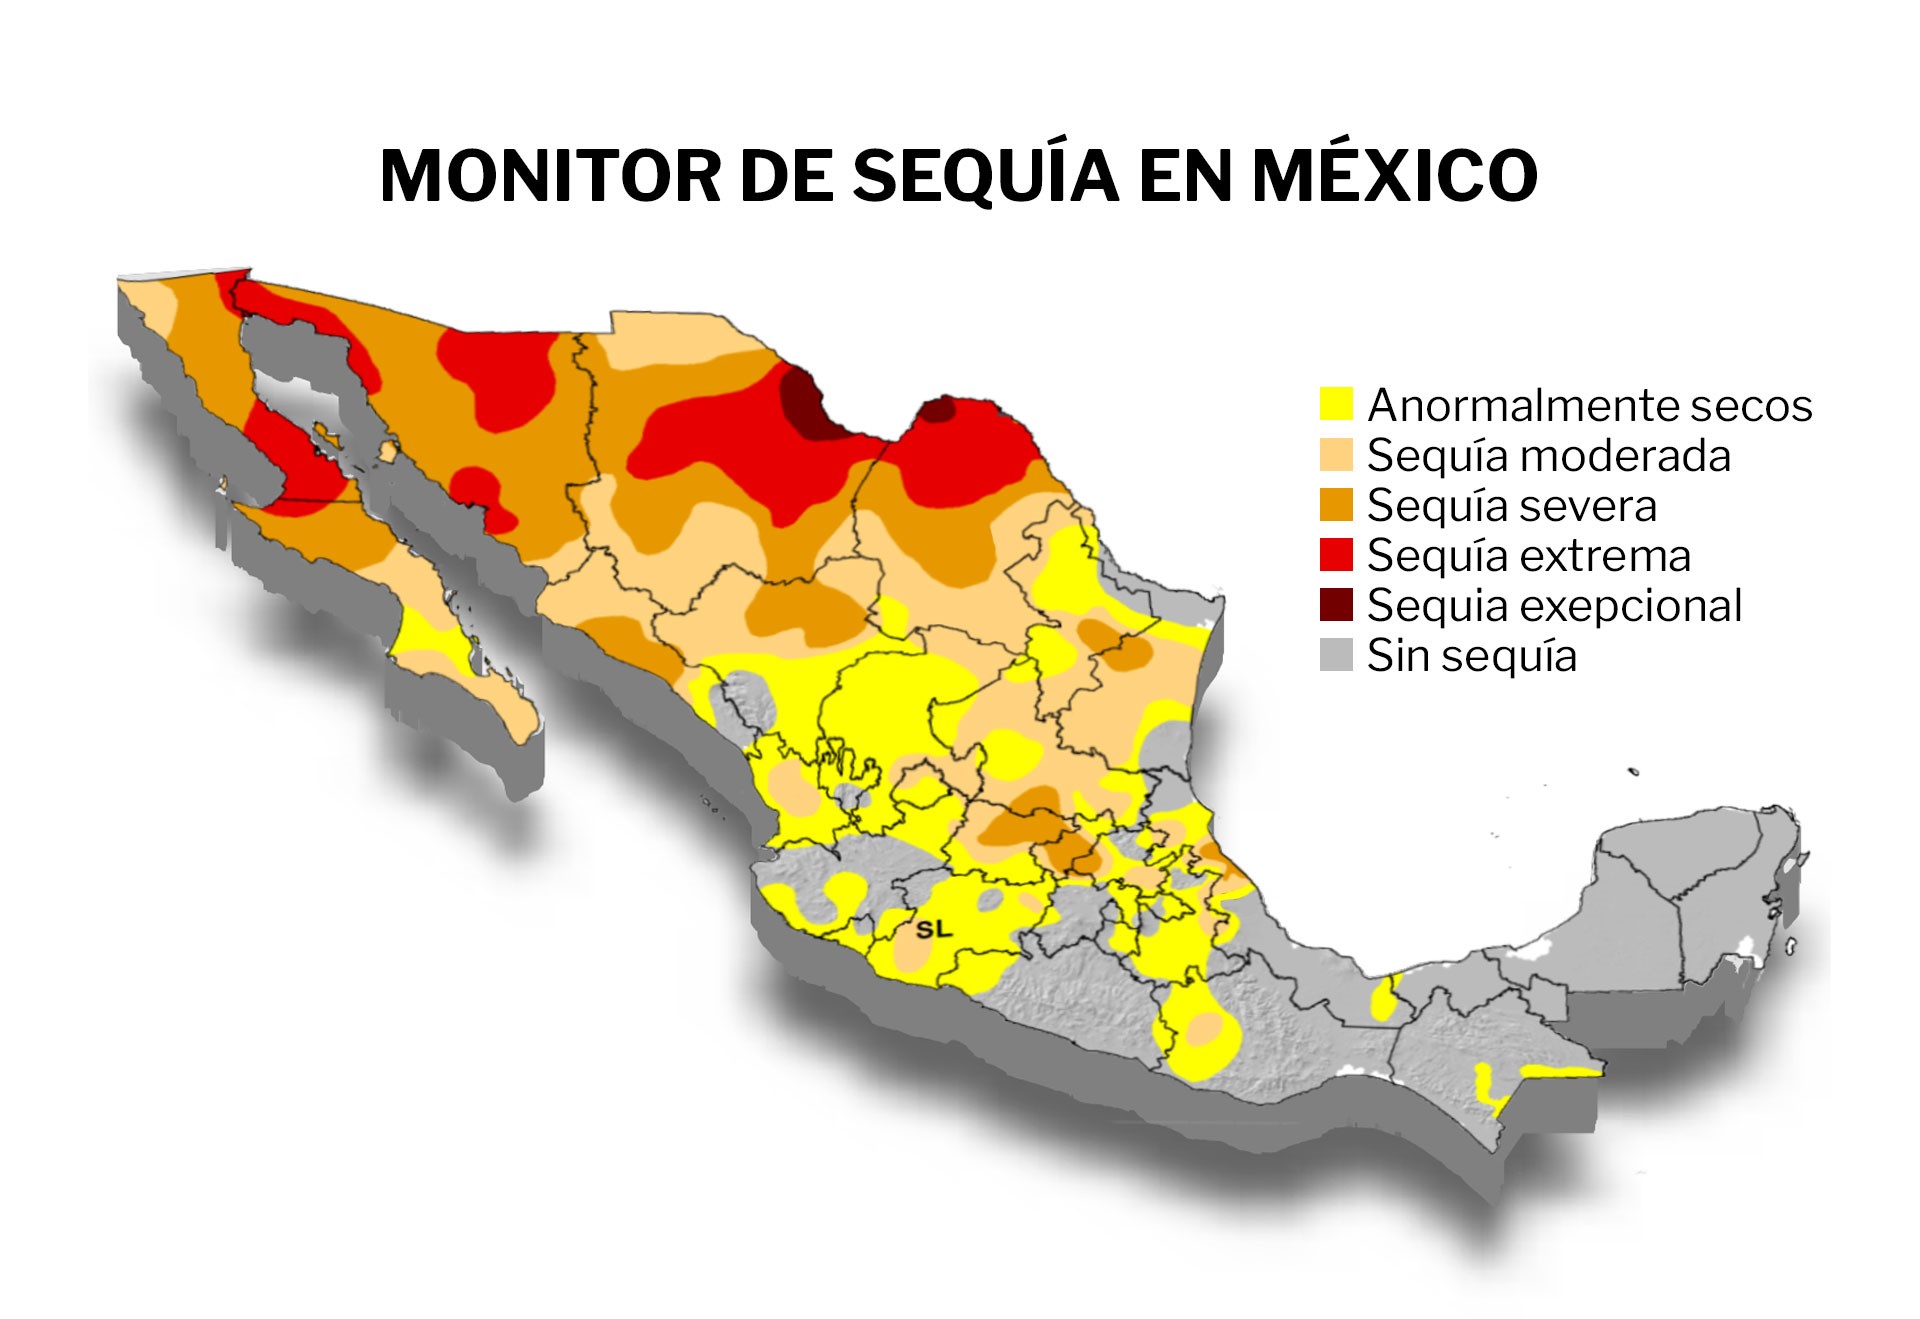 Baja California, Sonora, Chihuahua y Coahuila son los estados con la sequía más grave en México 